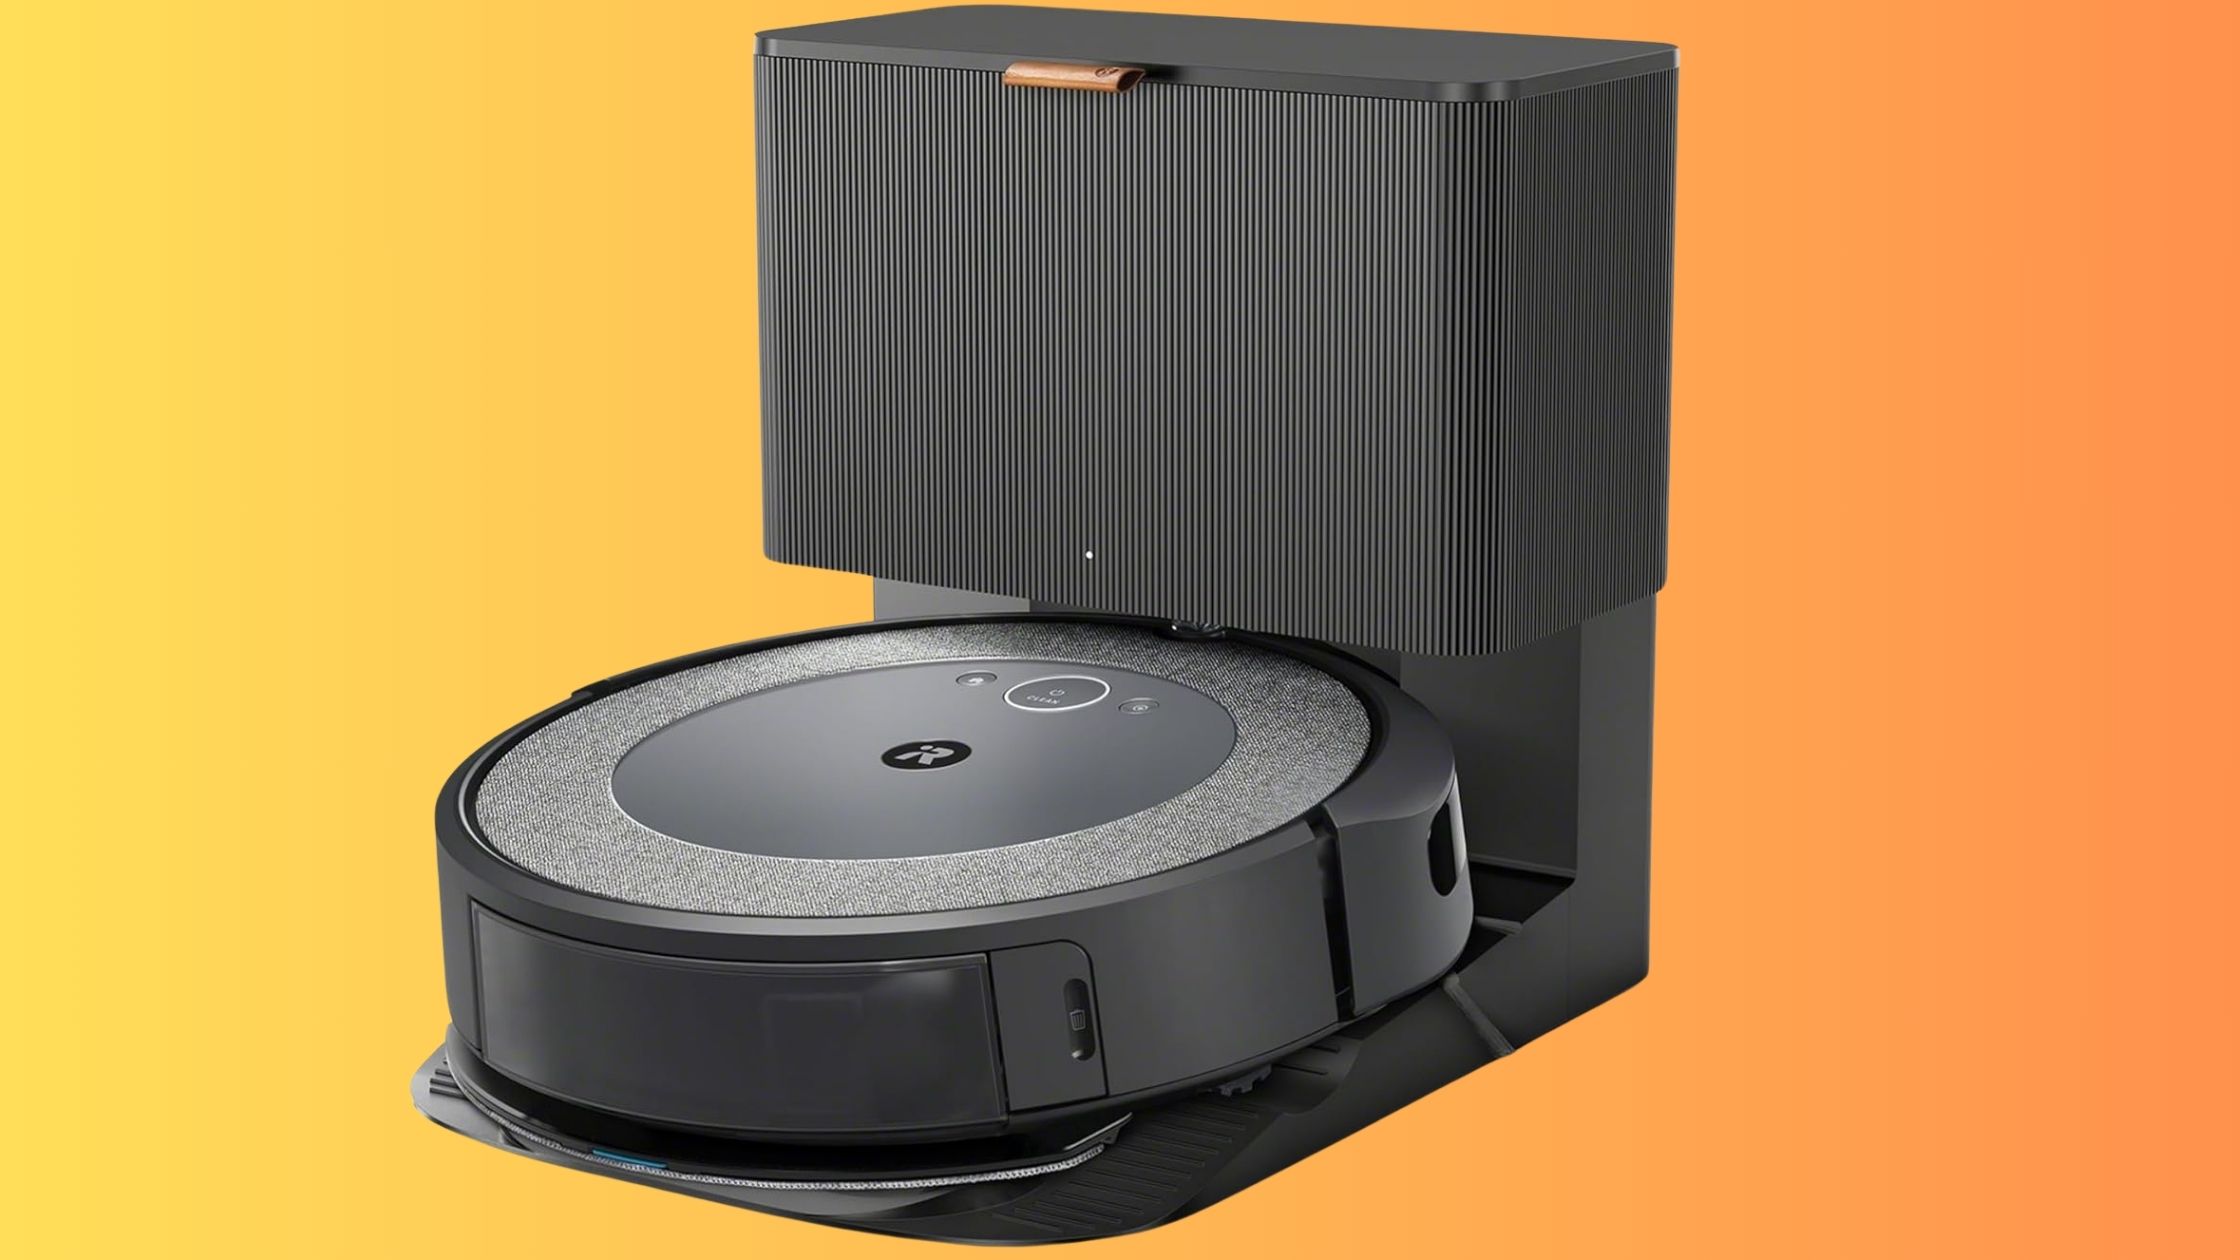 Prime Day : incroyable réduction sur l'aspirateur robot Roomba Combo i5+ à saisir d'urgence © Amazon